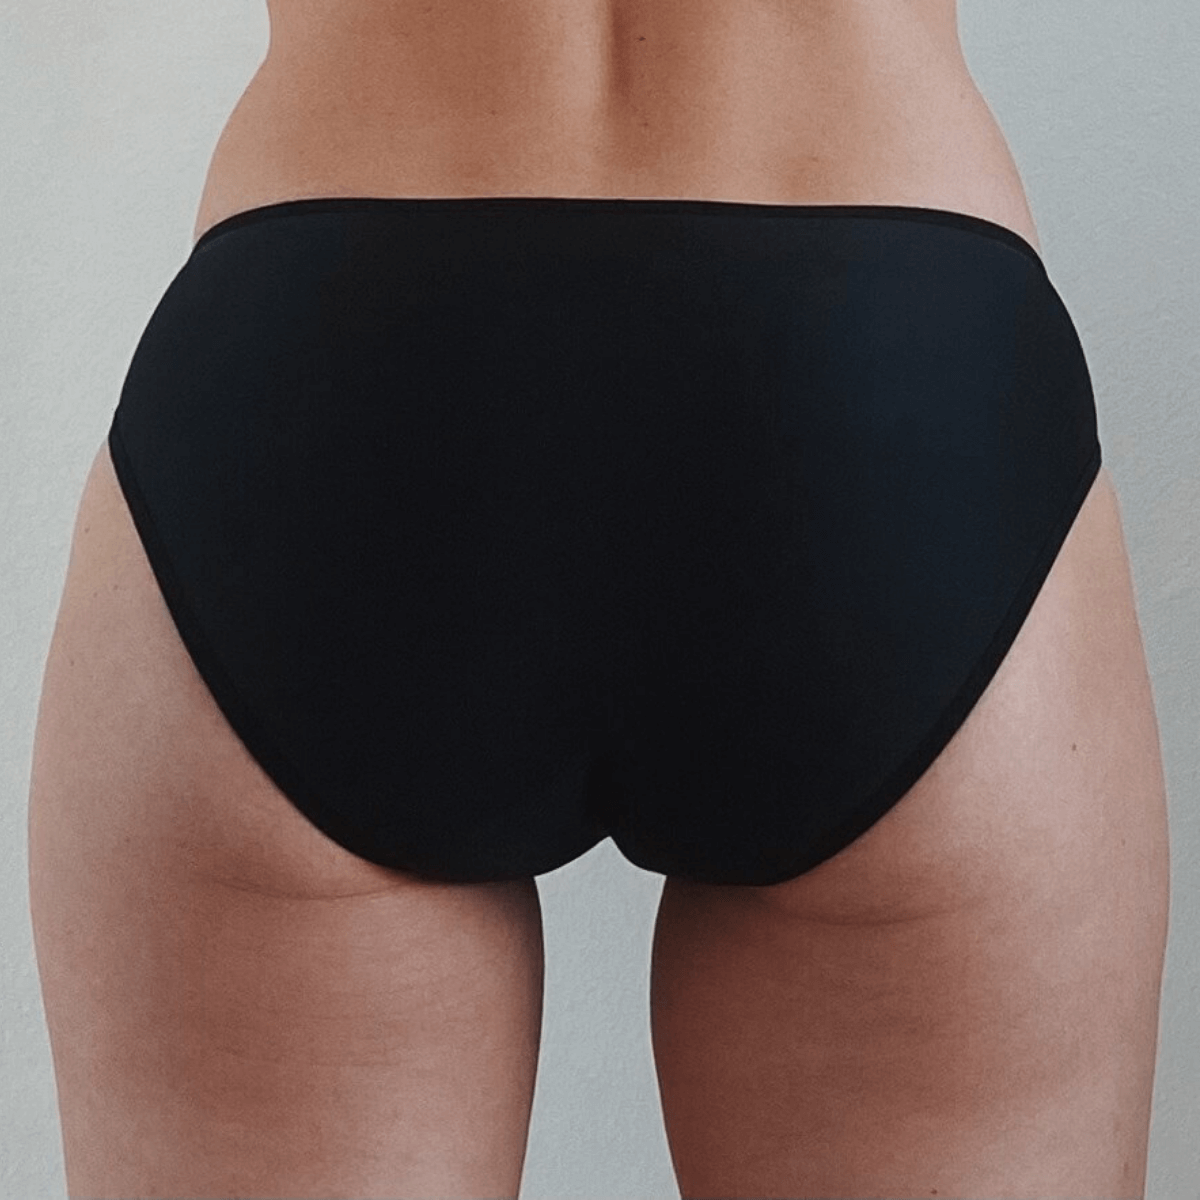 Why to prefer leakproof panties